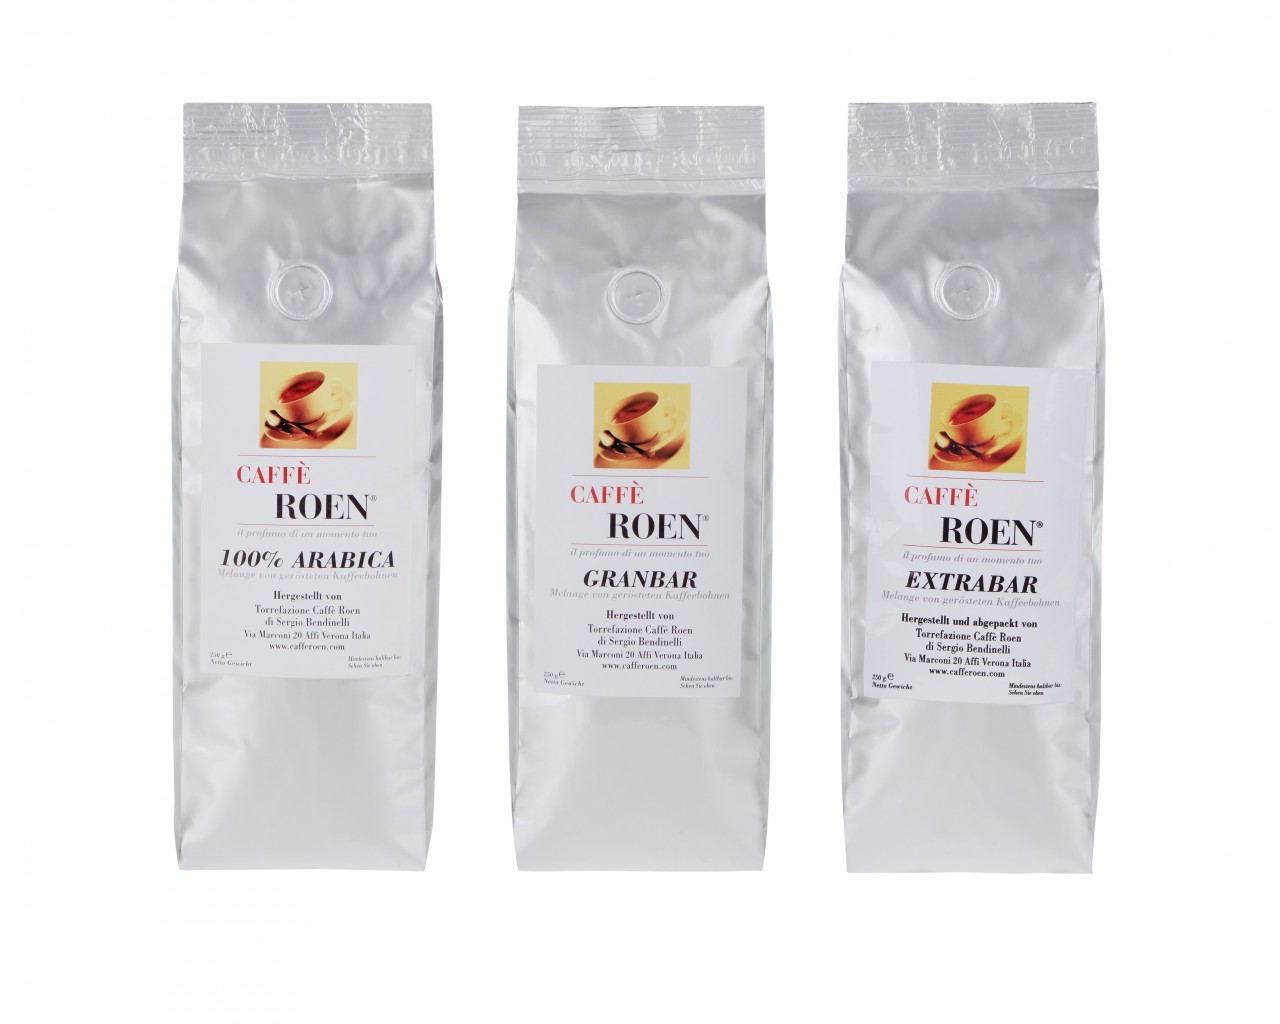 Roen Caffè Tasting Package 3 X 250G Beans